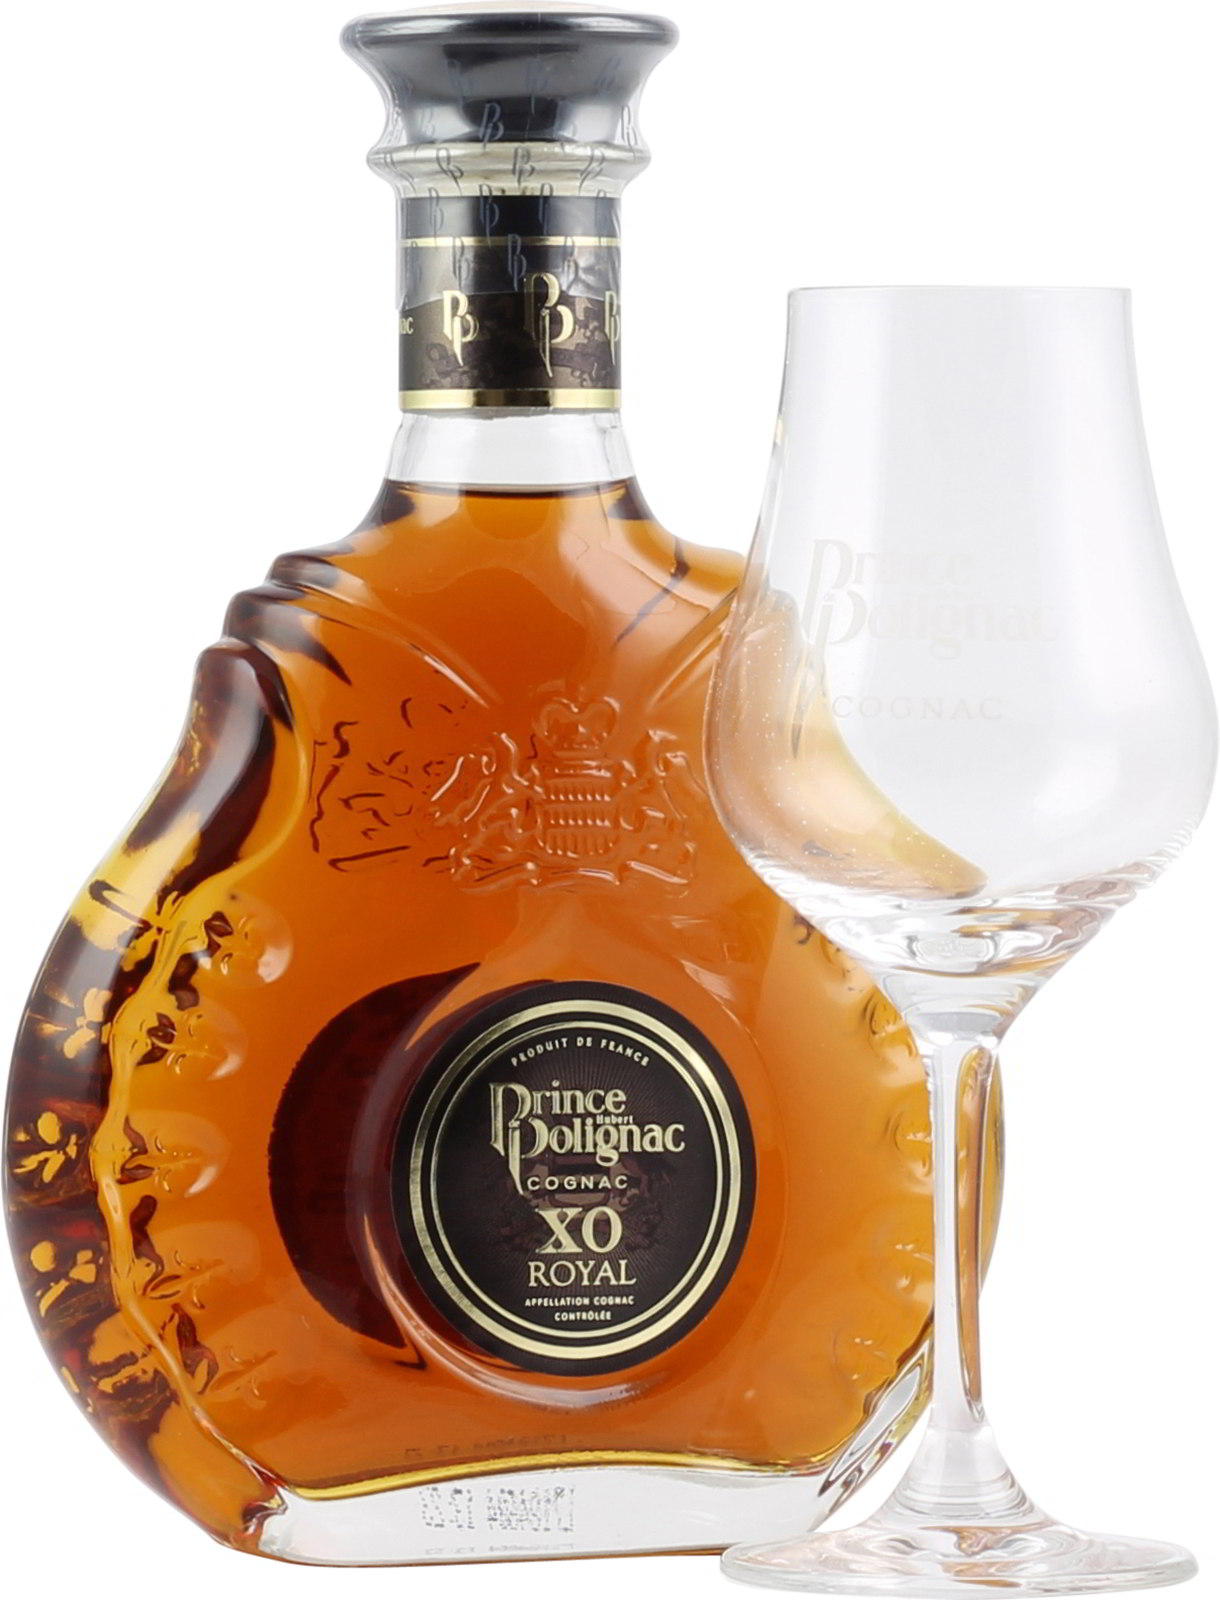 Polignac Cognac XO Royal 0,35 Liter mit Glas bei uns ka